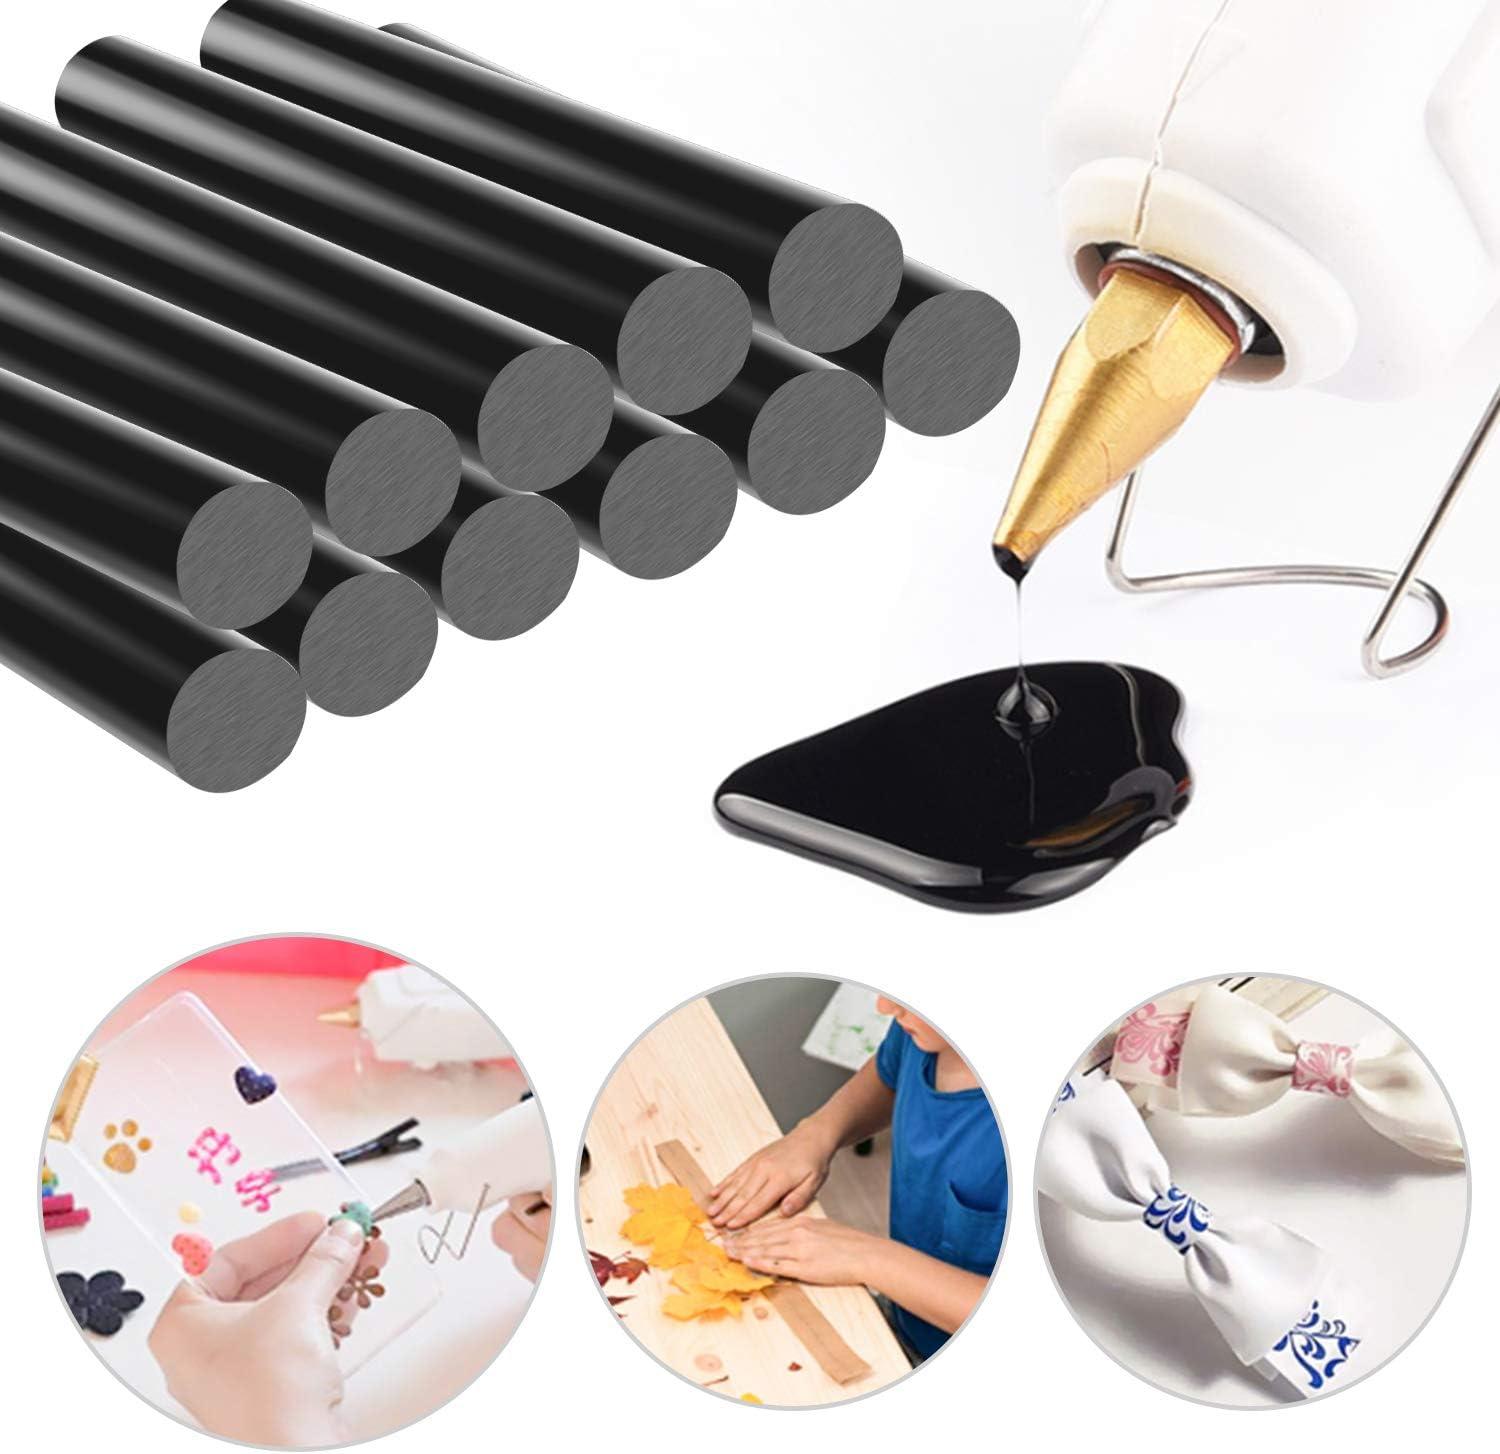 15pcs Hot Glue Sticks, 270 X11mm Black Hot Glue Sticks For Car Body Dent  Repair Remover Crafts Diy